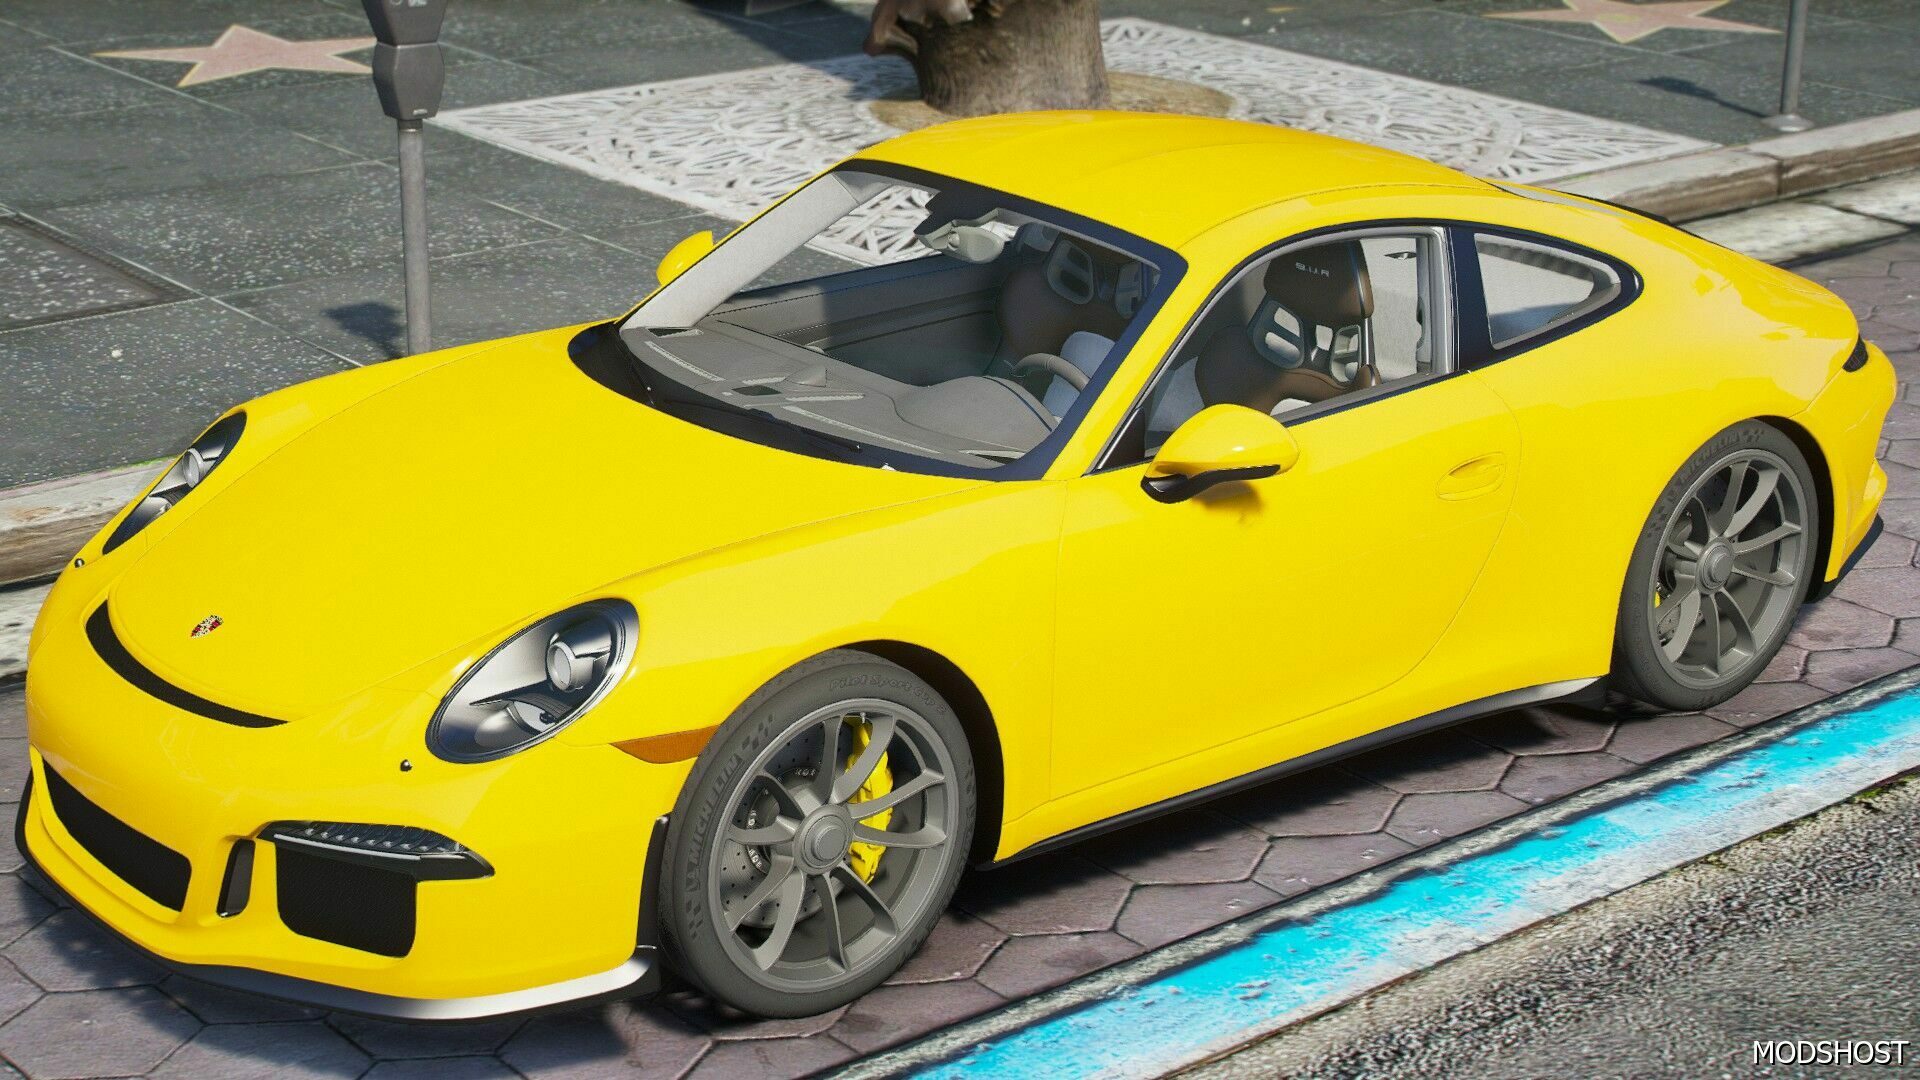 Porsche 911R Grand Theft Auto V Vehicle Mod - ModsHost